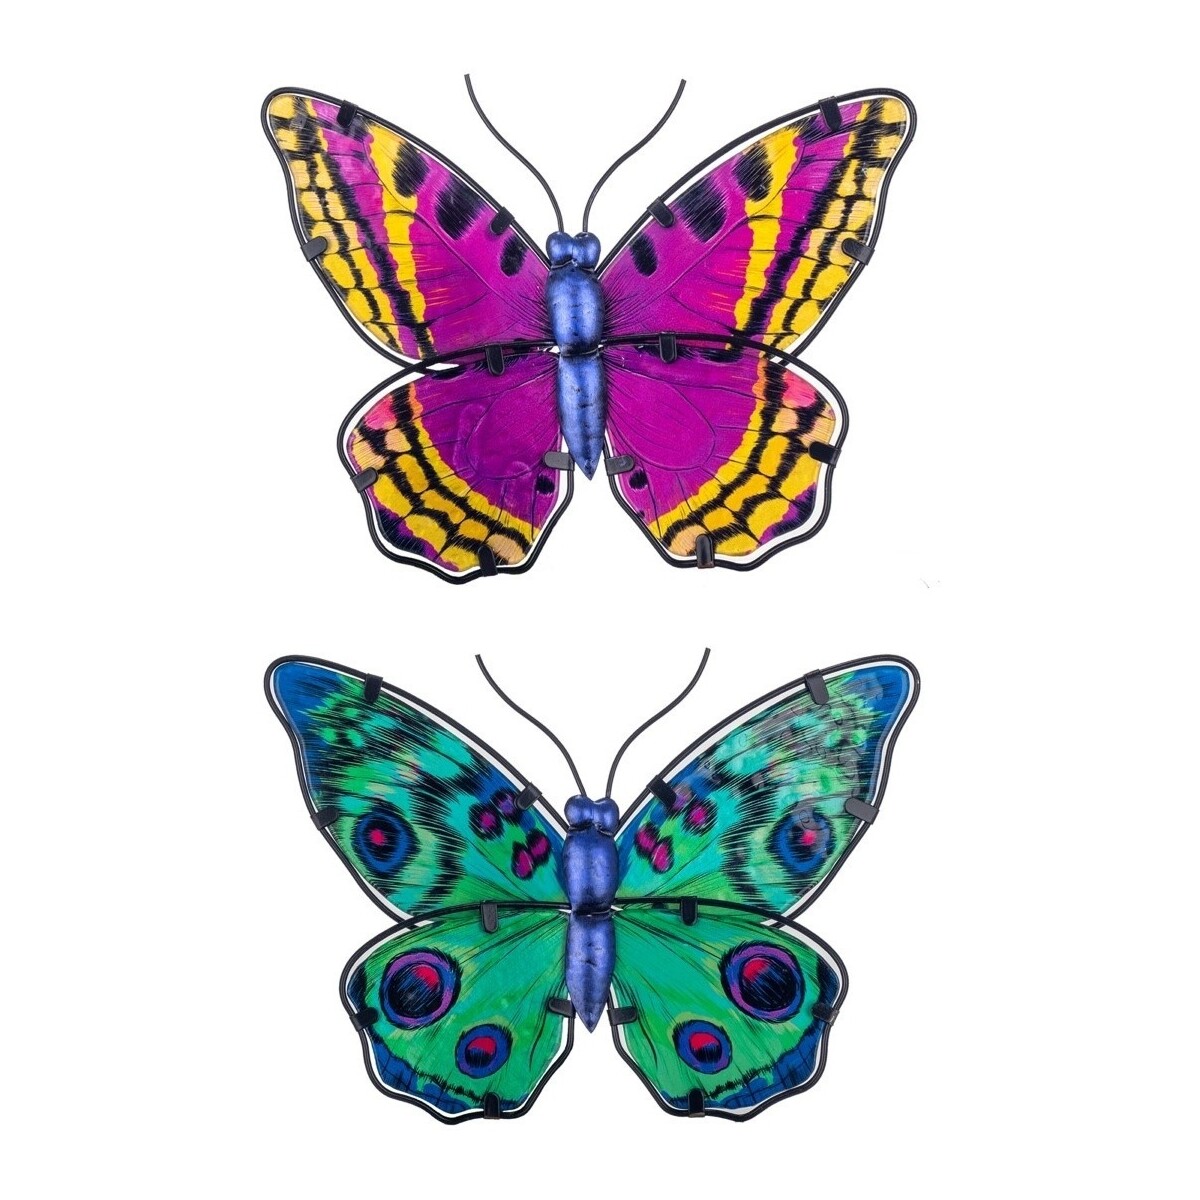 Σπίτι Αγαλματίδια και  Signes Grimalt Πεταλούδες Εικόνα 2 Μονάδες Multicolour